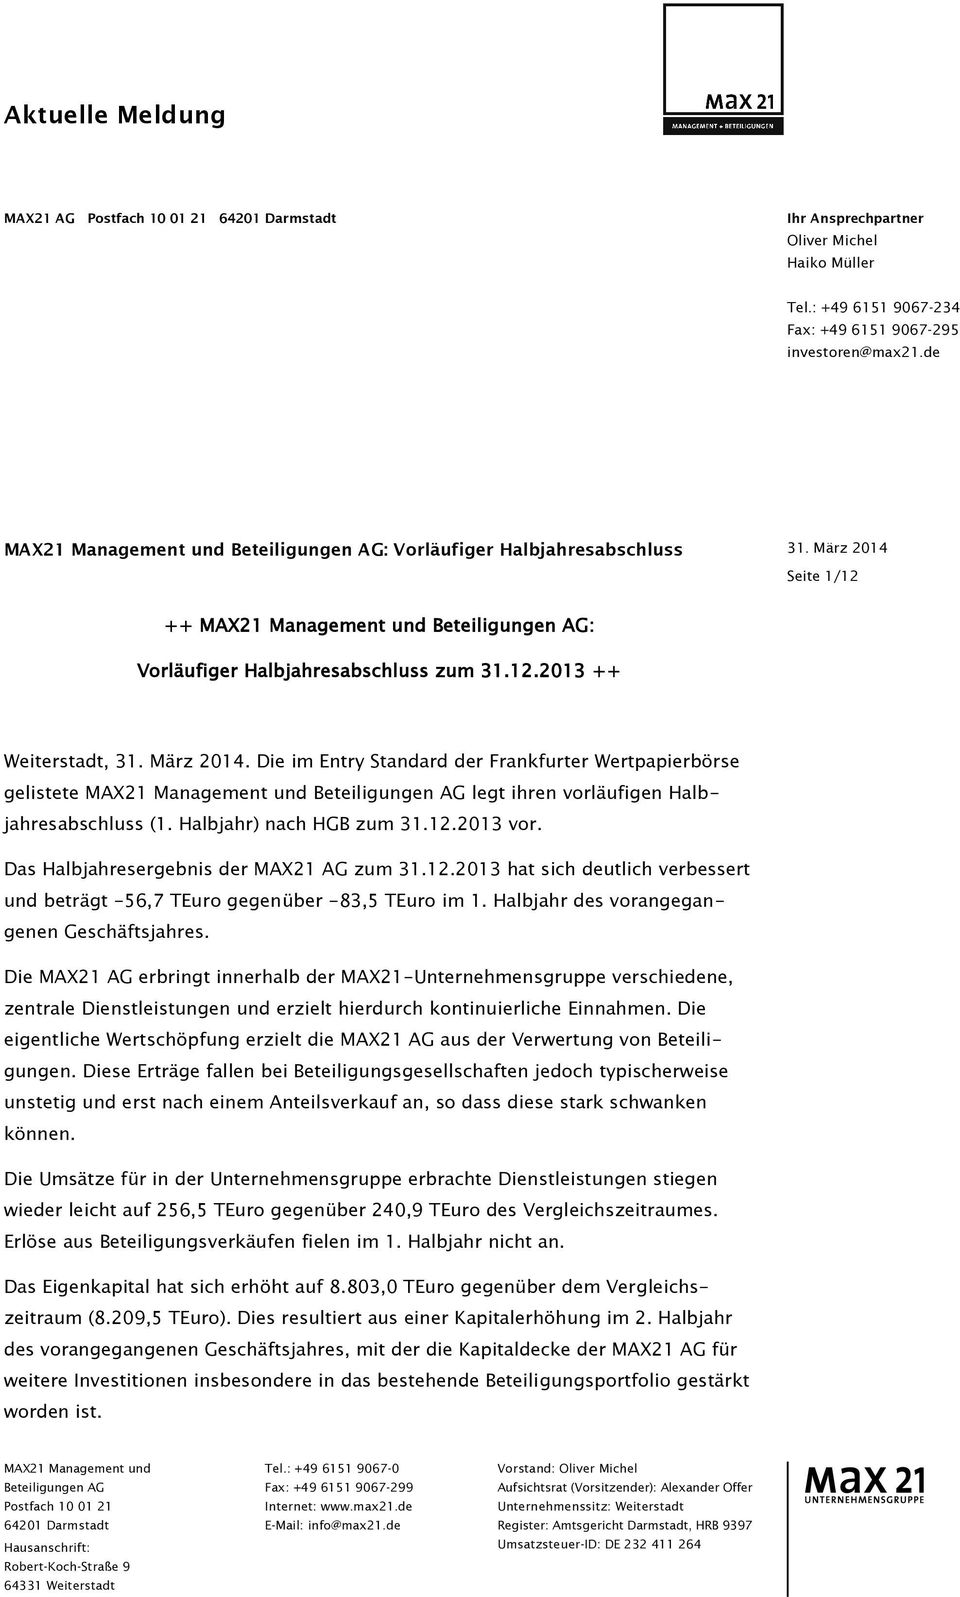 März 2014. Die im Entry Standard der Frankfurter Wertpapierbörse gelistete MAX21 Management und Beteiligungen AG legt ihren vorläufigen Halbjahresabschluss (1. Halbjahr) nach HGB zum 31.12.2013 vor.